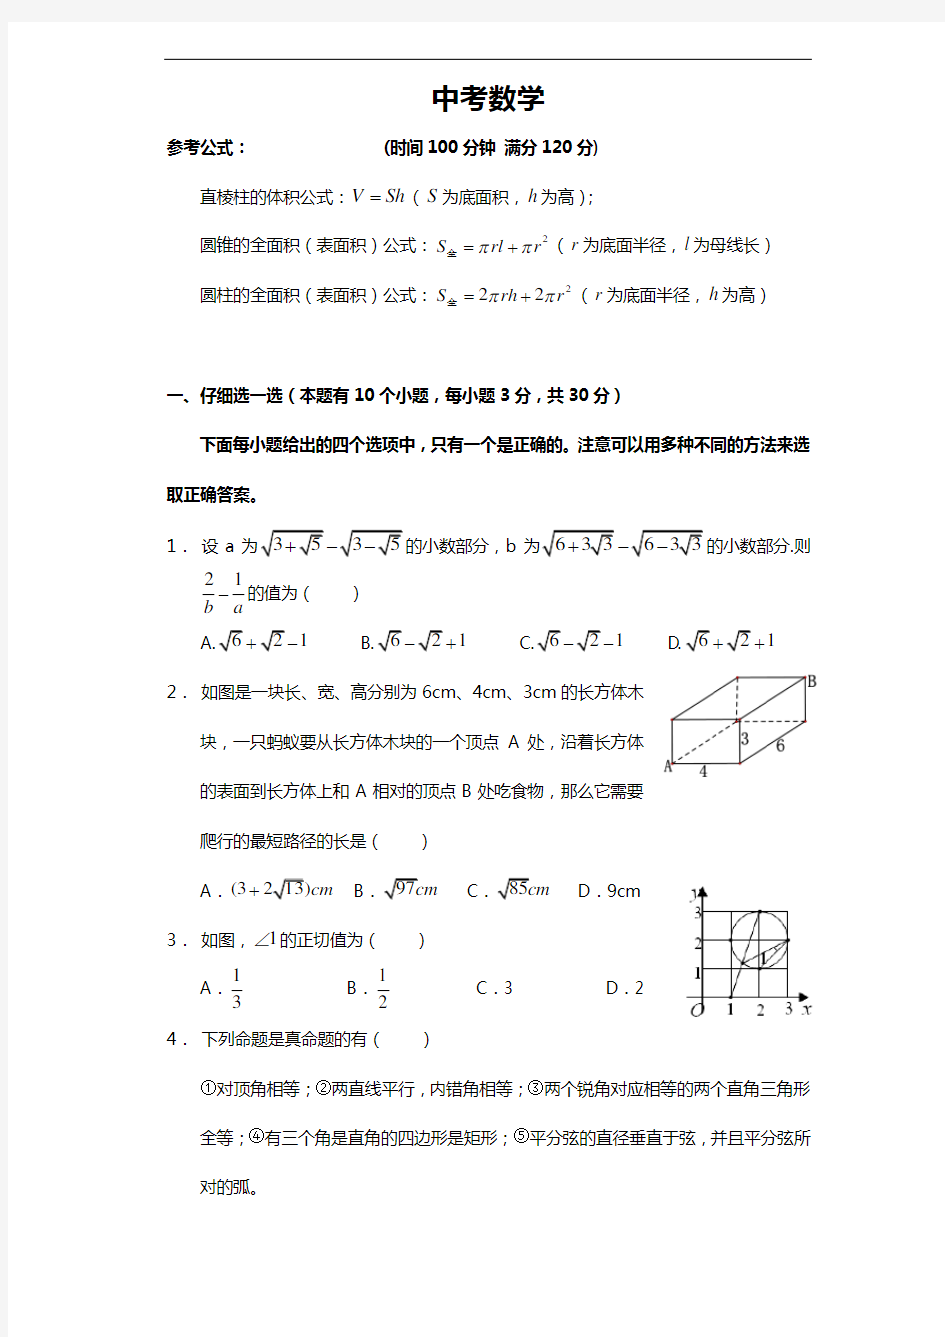 2017杭州市中考数学模拟卷(含试题(卷)分析)难度大